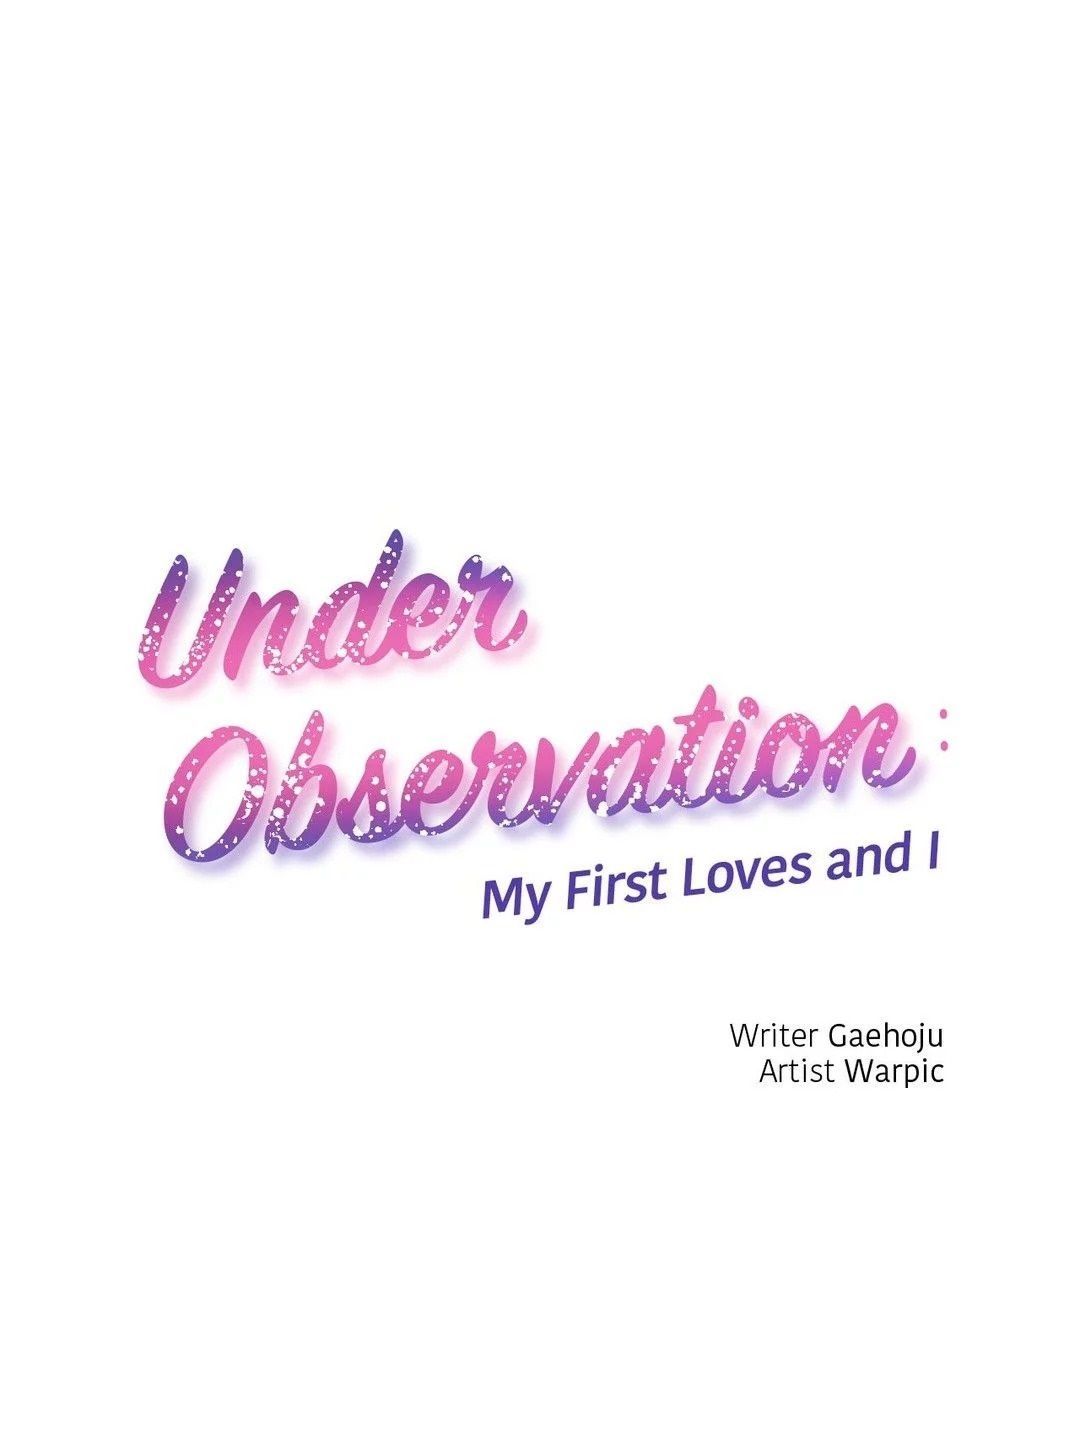 อ่าน Under Observation: My First Loves and I